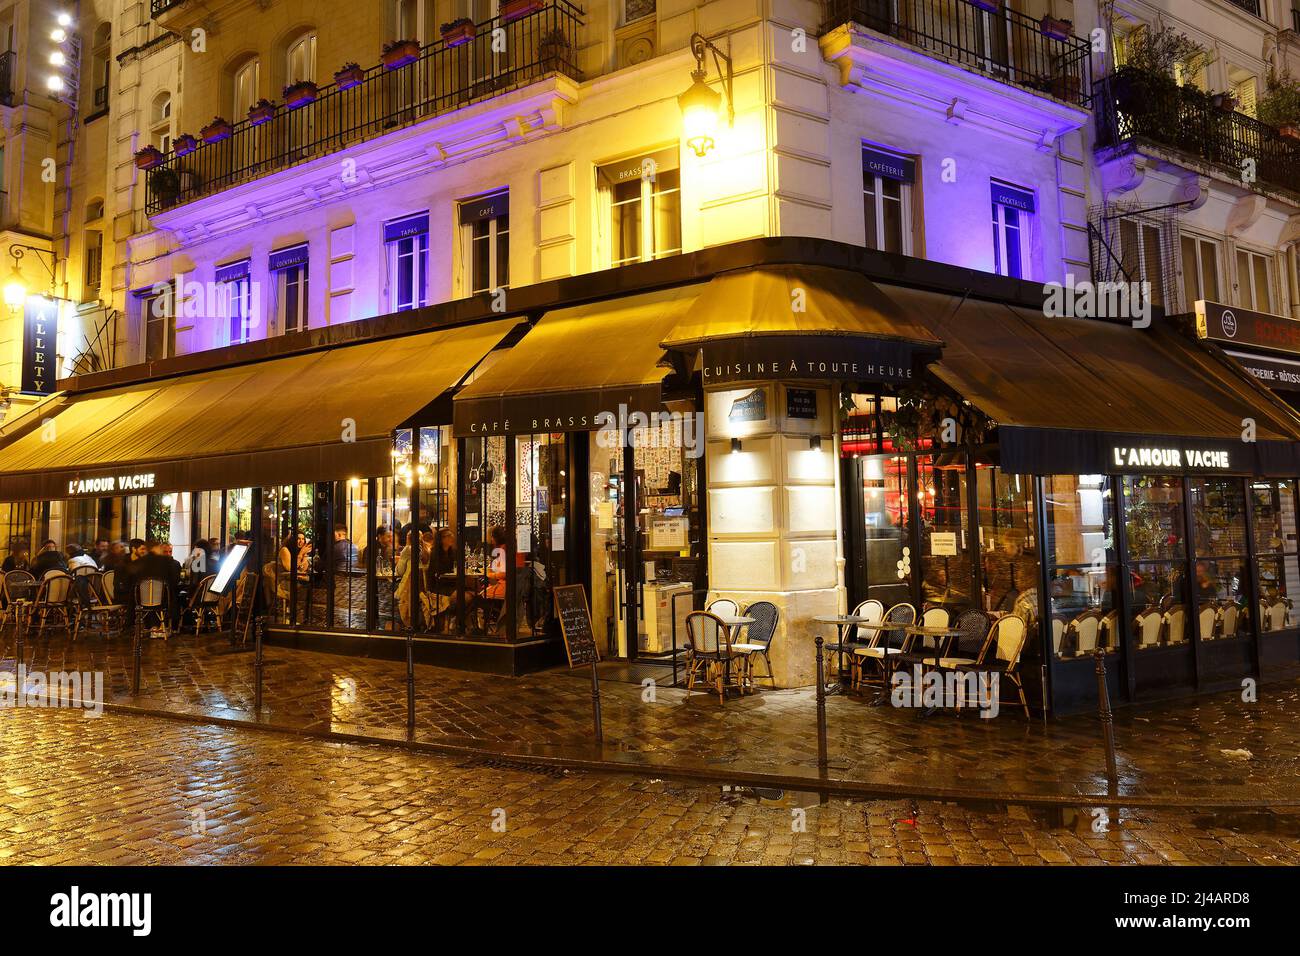 Das traditionelle französische Restaurant L'Amour vache befindet sich am Boulevard Bonne Nouvelle in der Nähe von Porte Saint Denis in Paris, Frankreich. Stockfoto